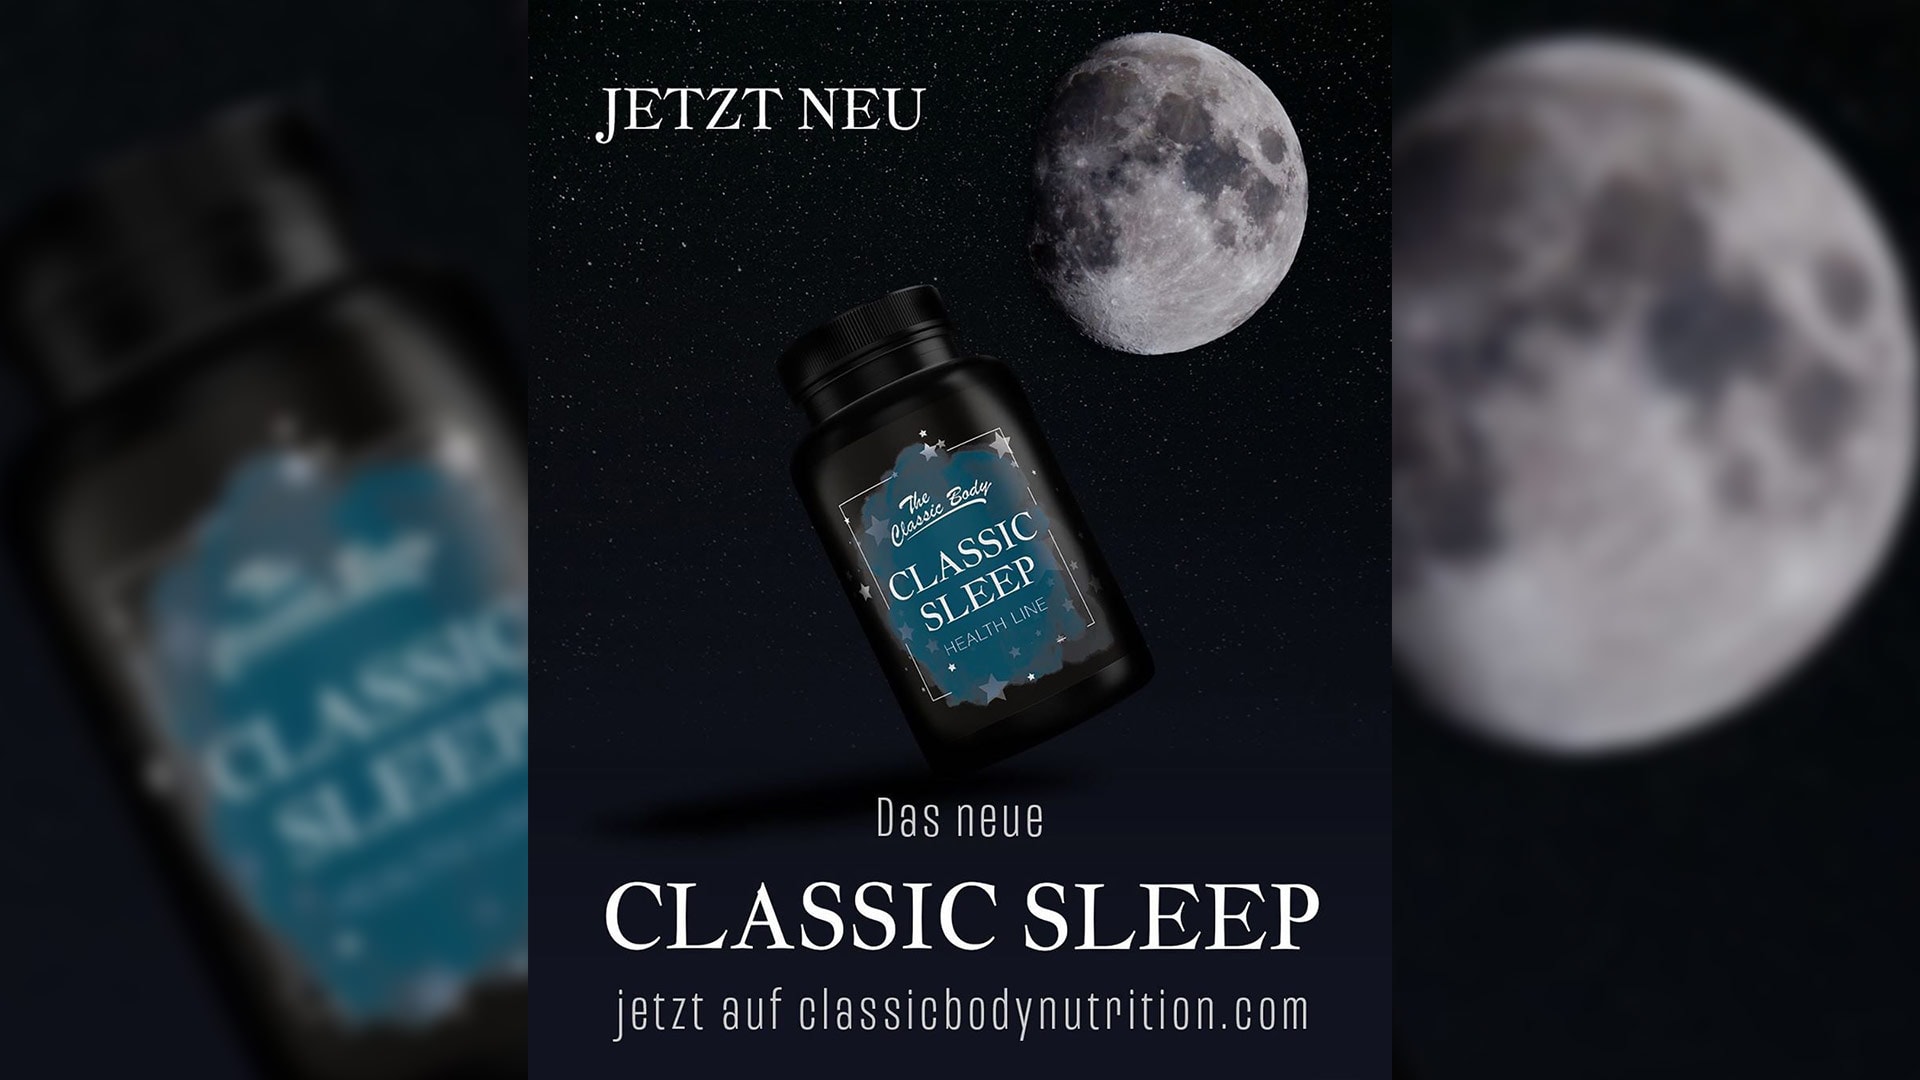 Bild zum Thema Classic Sleep: Neues Supplement von Classic Body Nutrition jetzt erhältlich